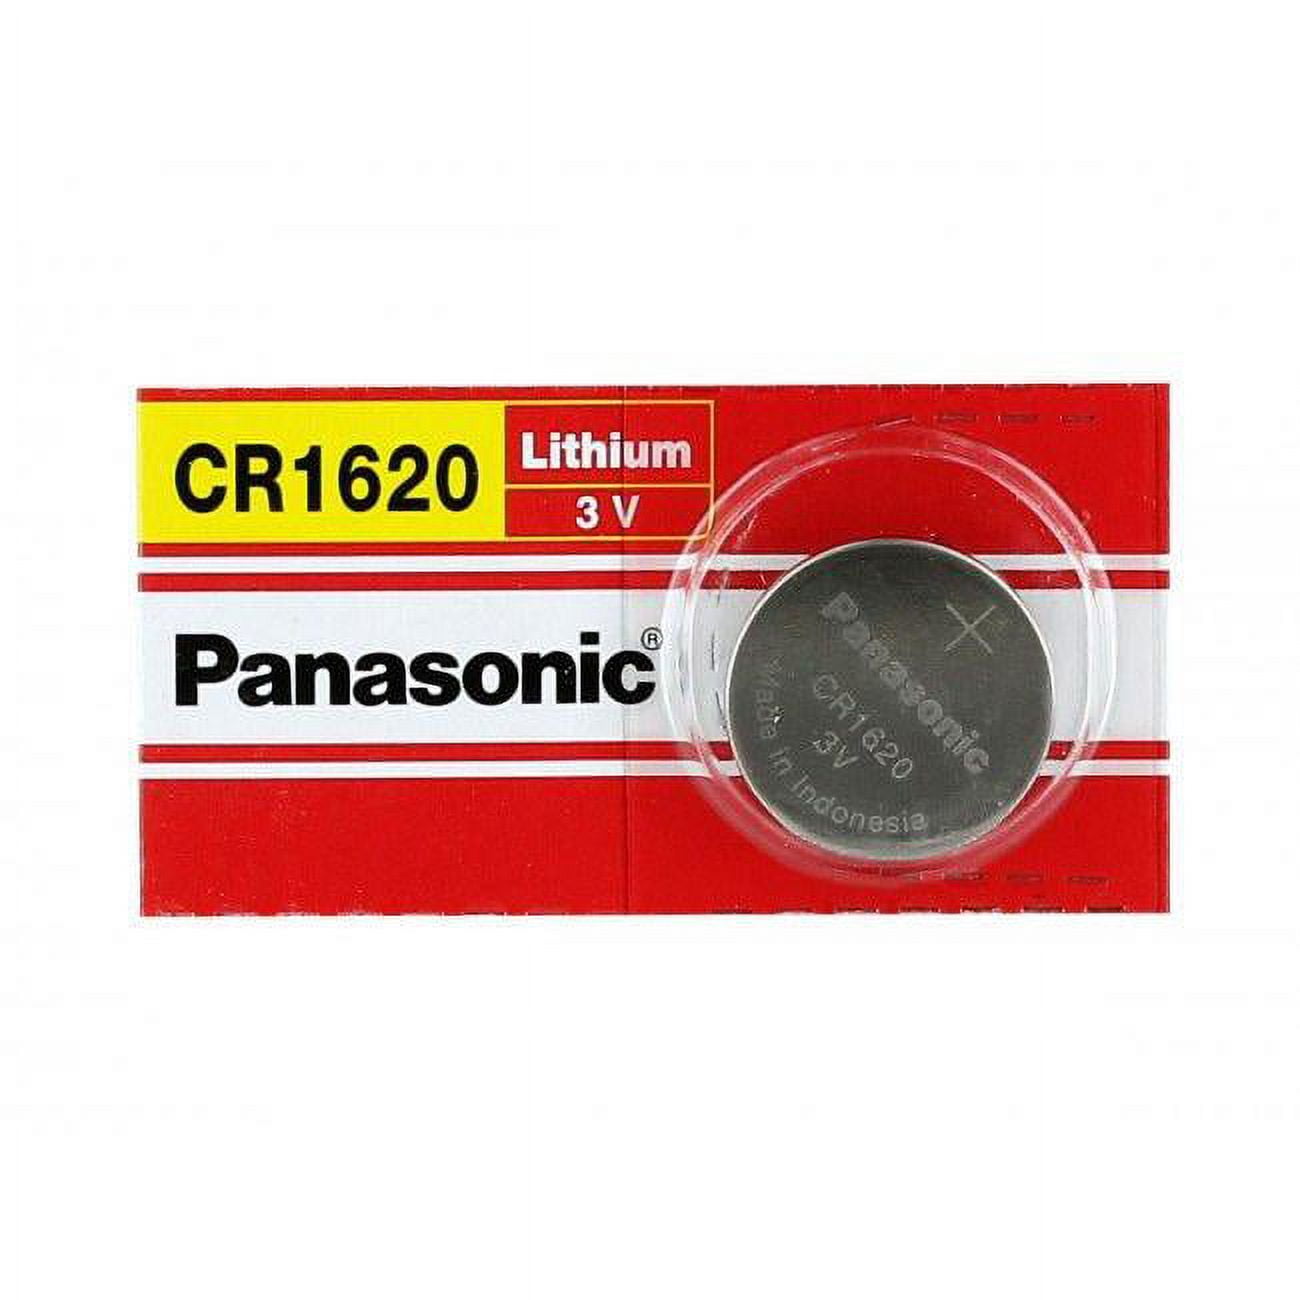 Panasonic CR1620 Lithium Battery